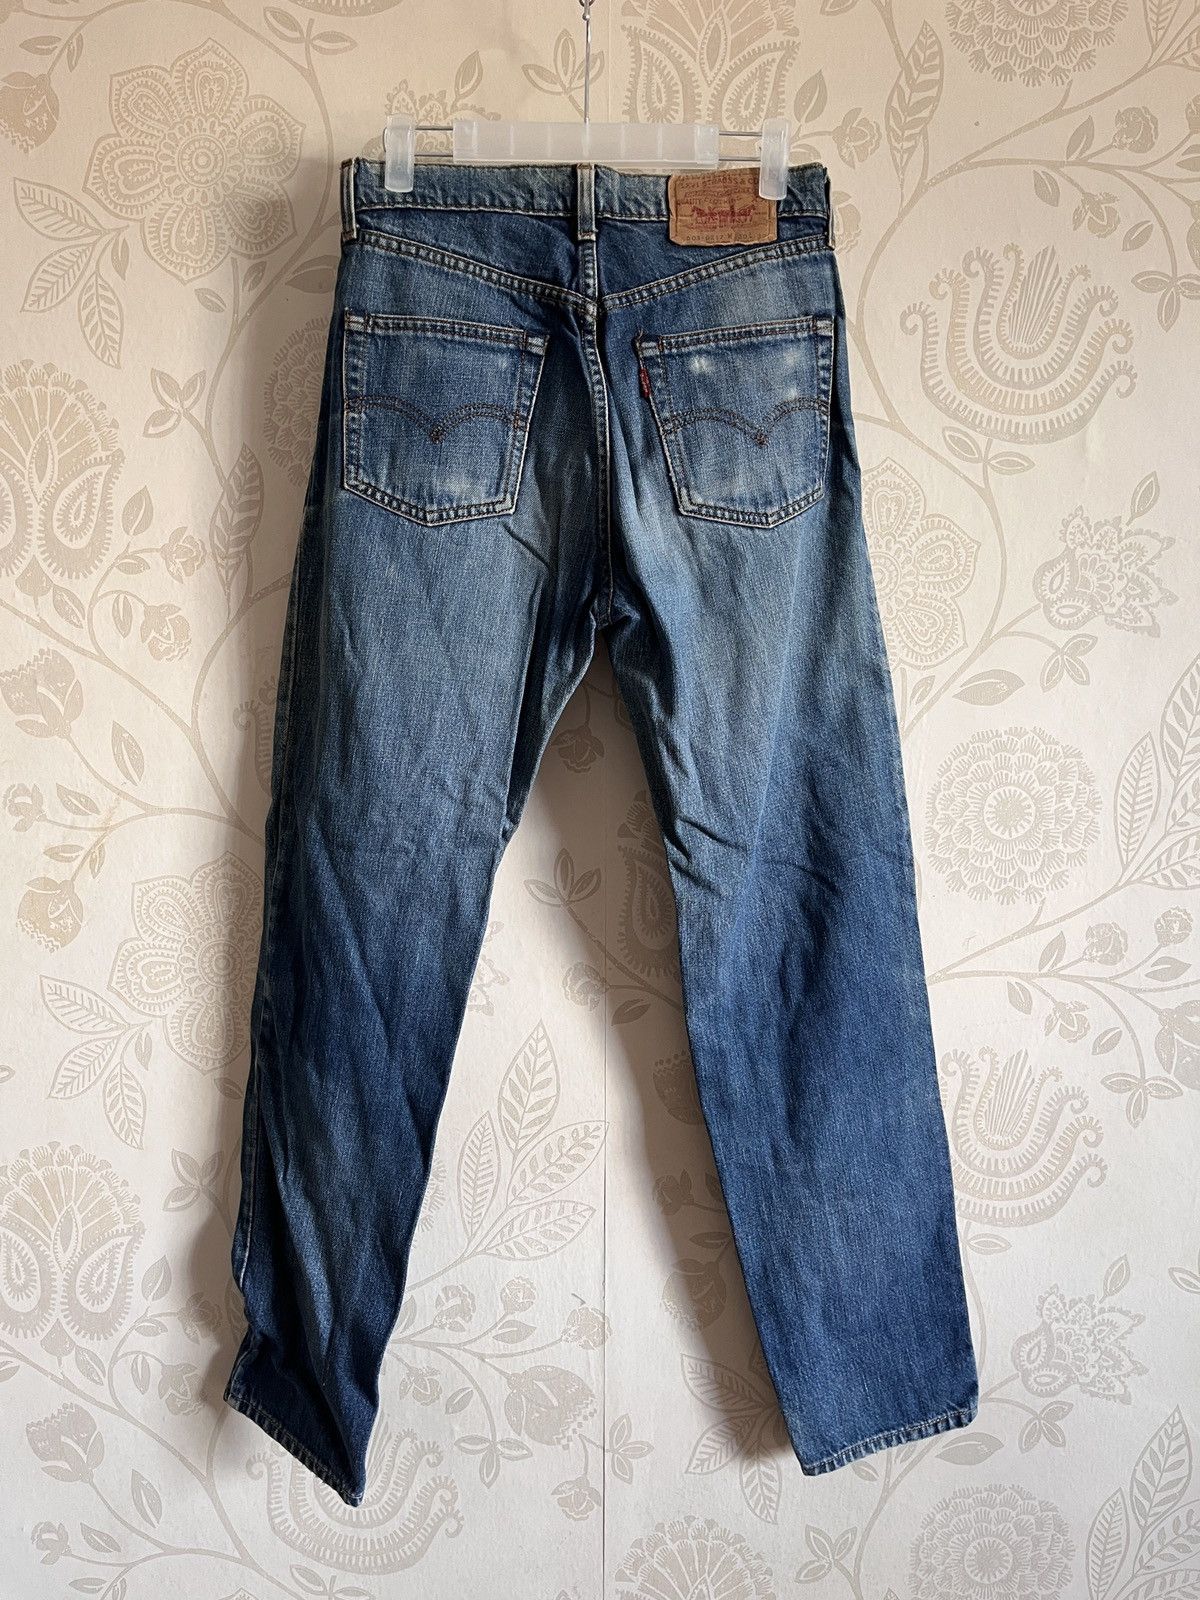 Vintage 1980s Levi's 603 Denim Jeans Straight Cut - 15